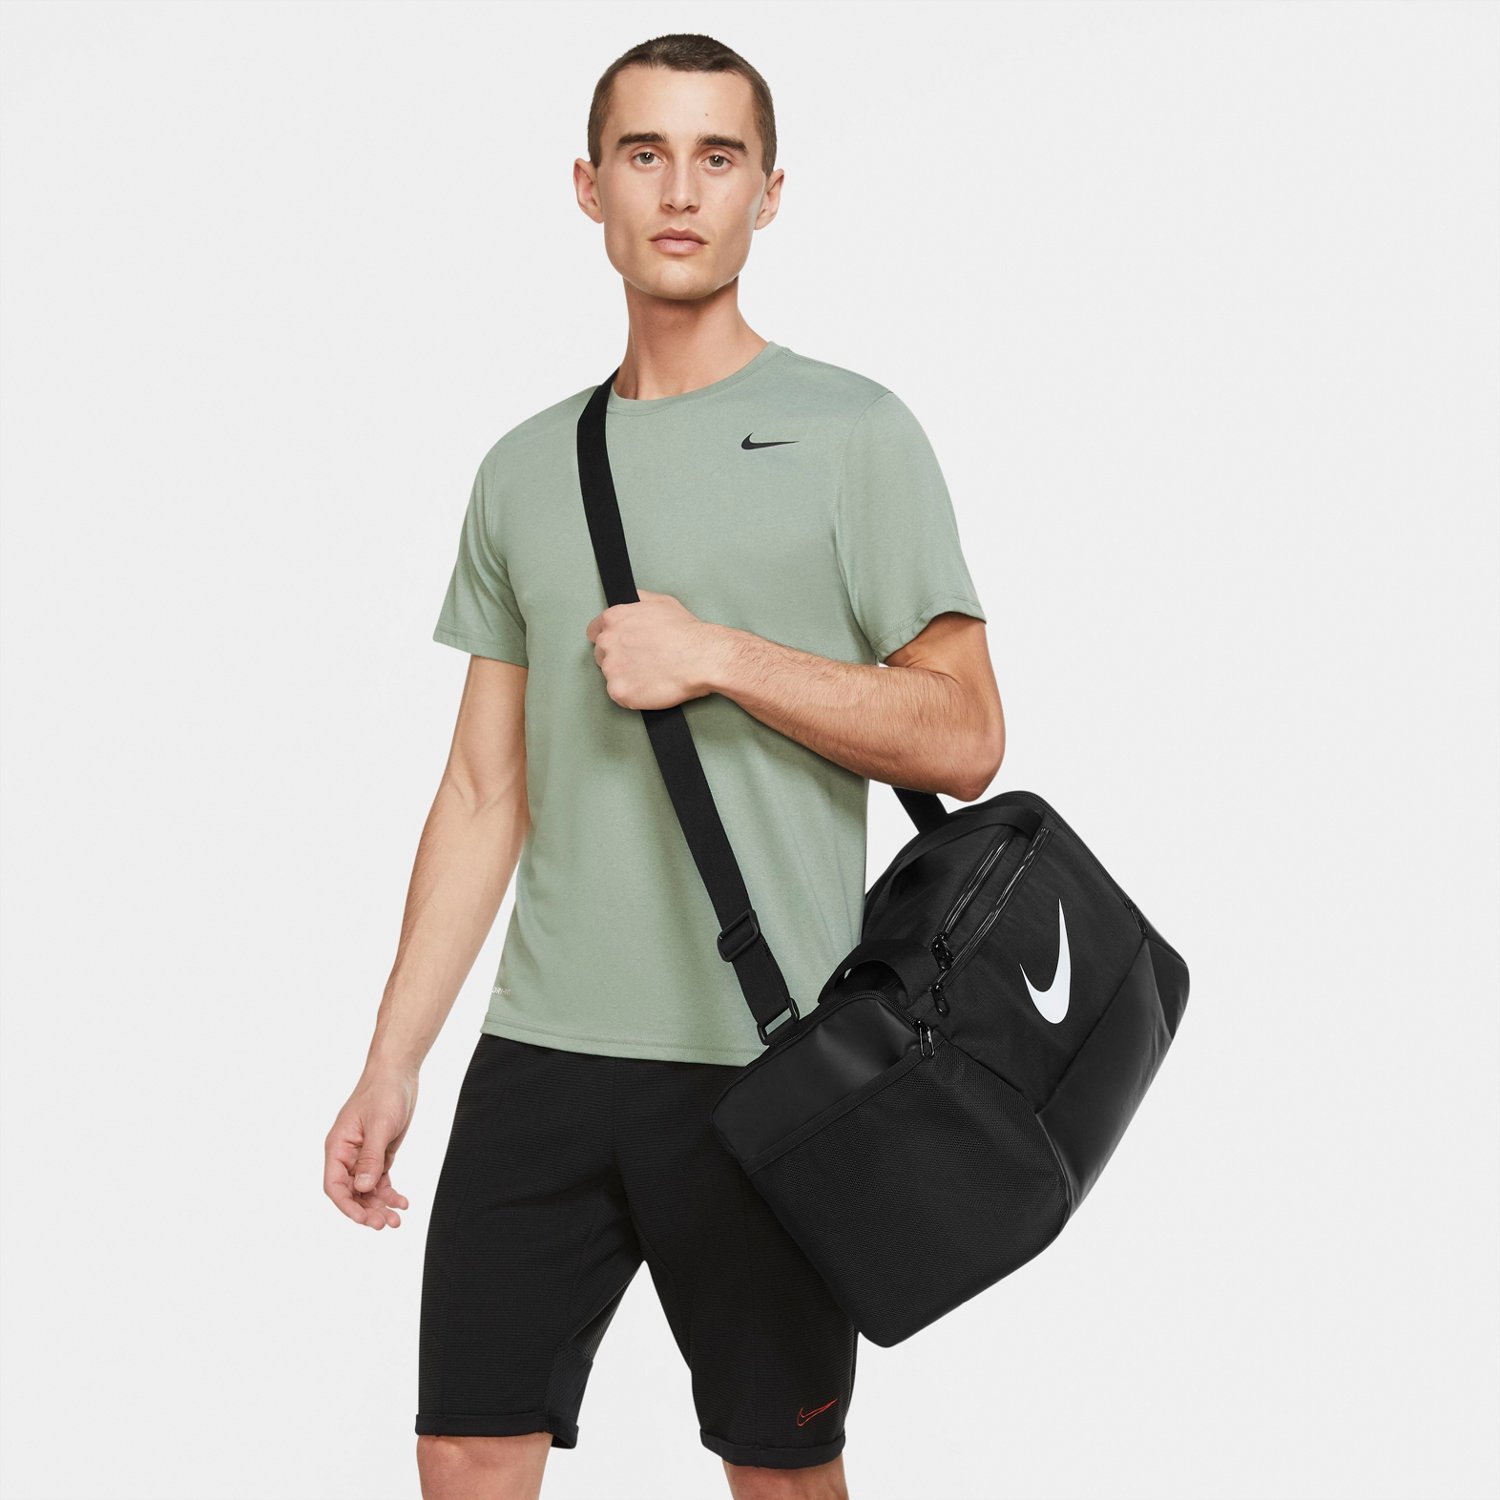 kubiek Bereiken studio Nike Training Small Duffel Bag | Academy